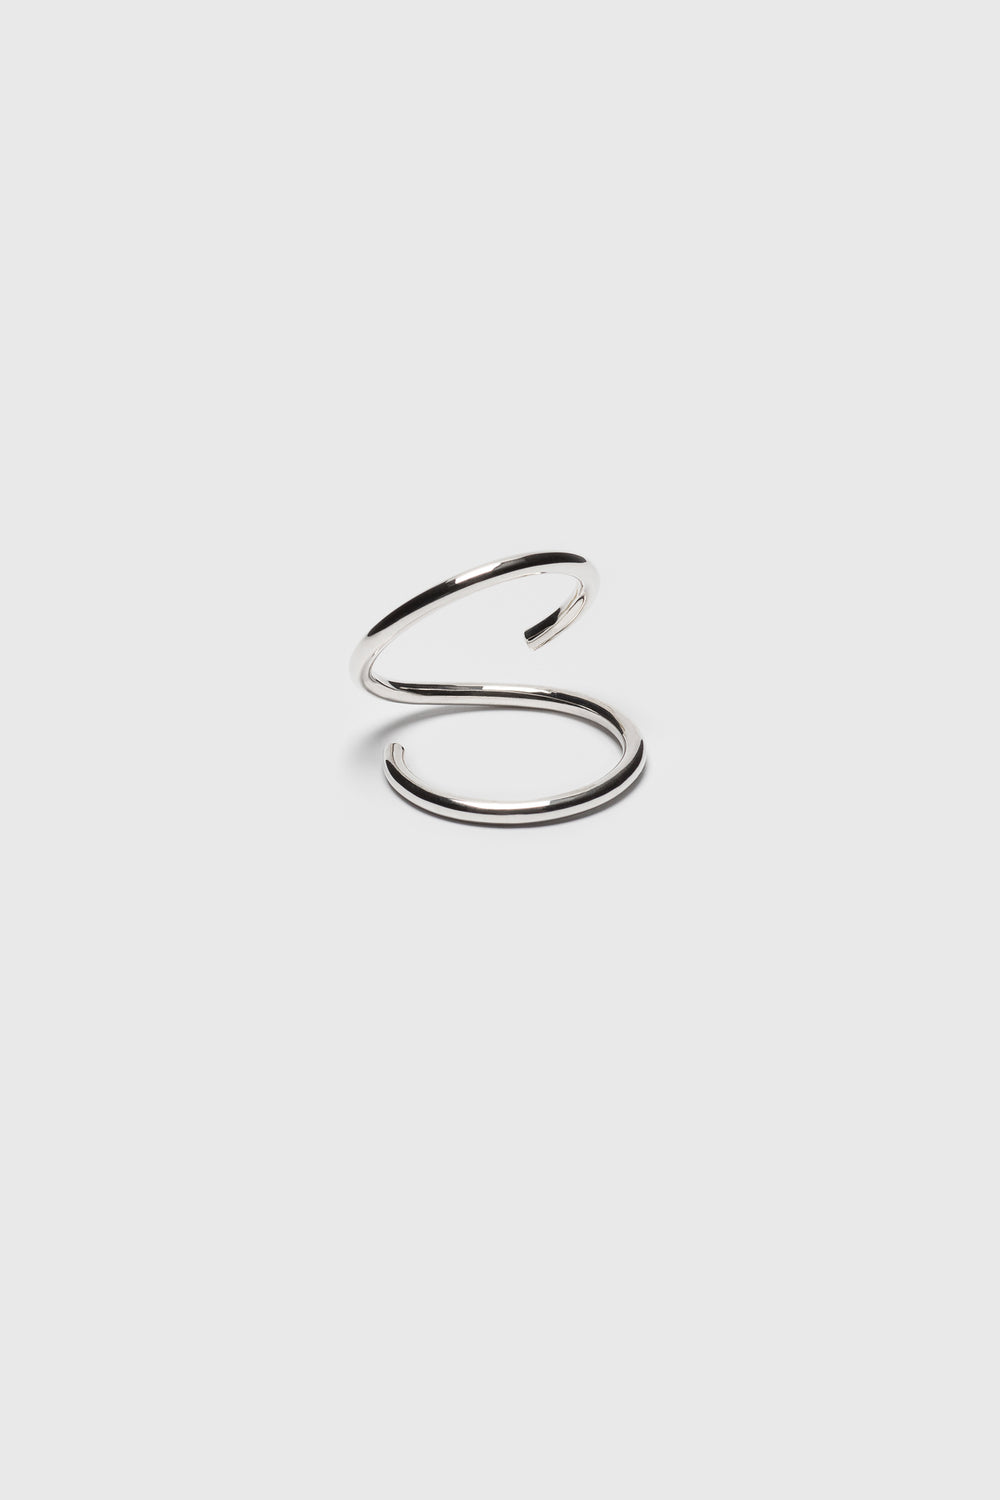 Open spiral ring. Silver jewelry handmade in Berlin.